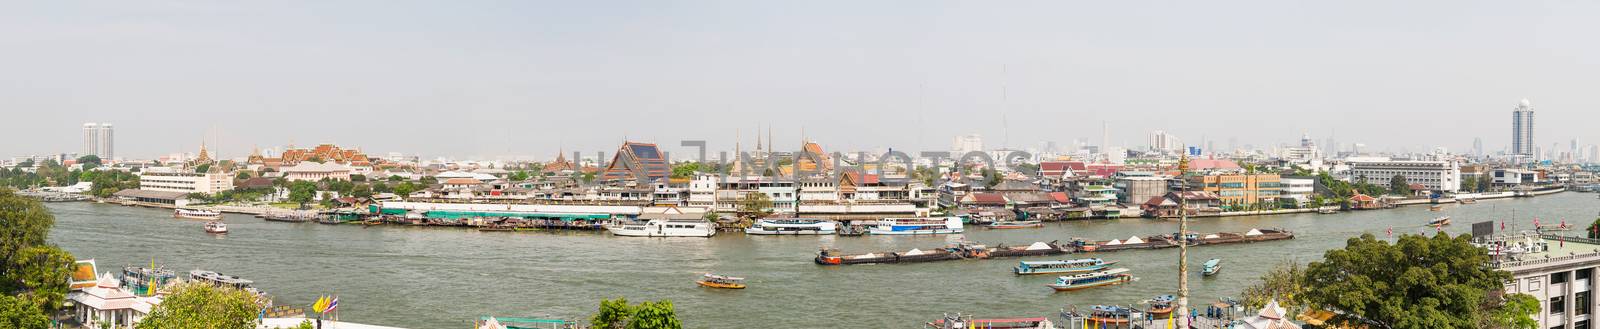 Bangkok, large panorama view. Chao Phraya river. Thailand. by aksenovko